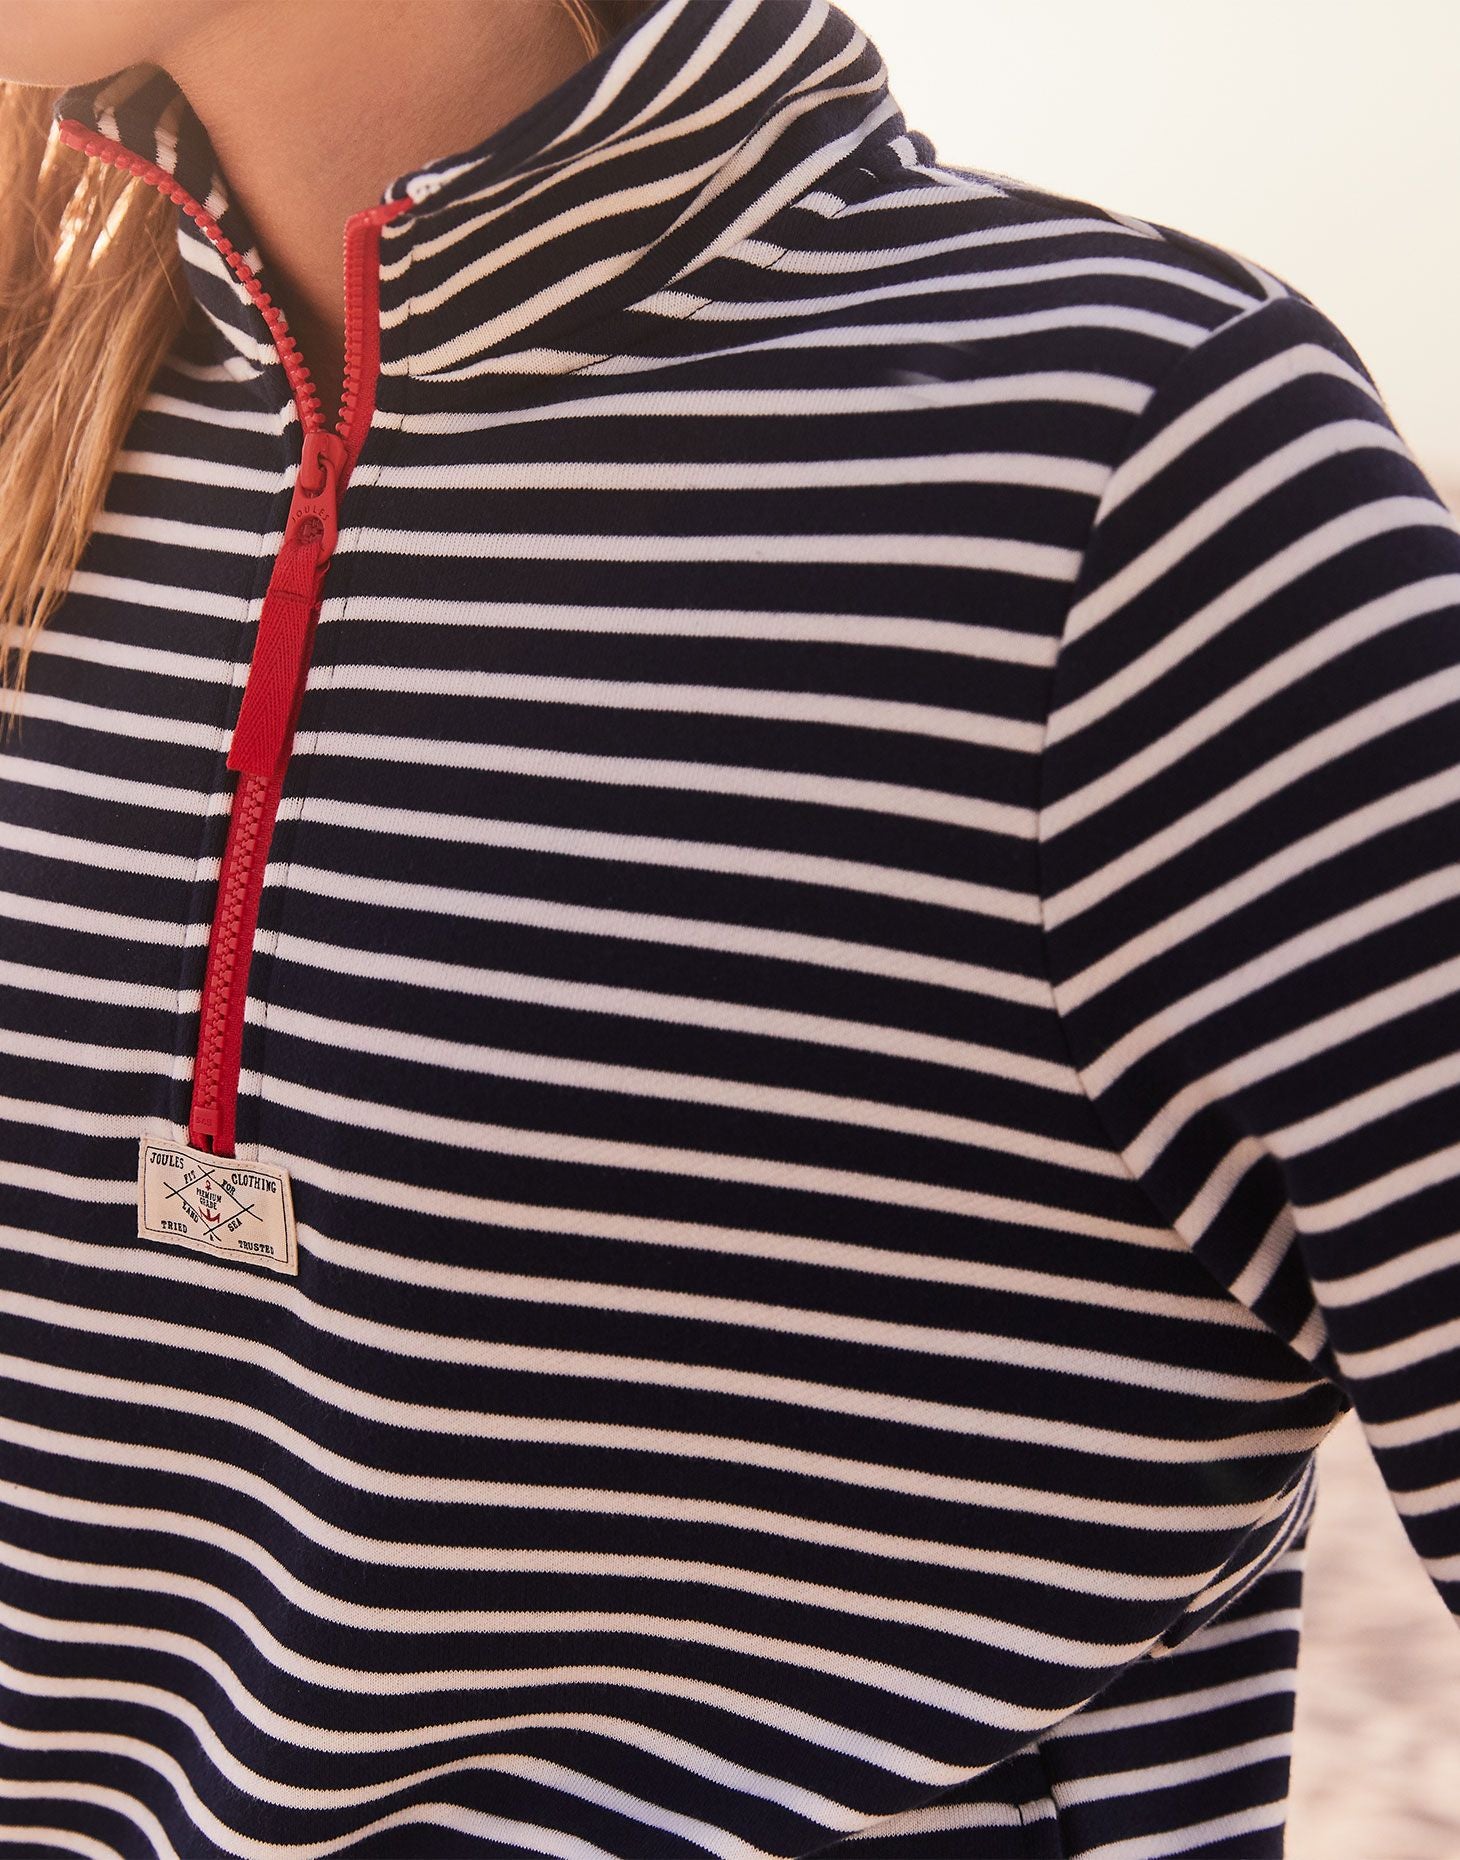 Joules - Women's Pip Half Zip Sweatshirt - Navy Cream Stripe